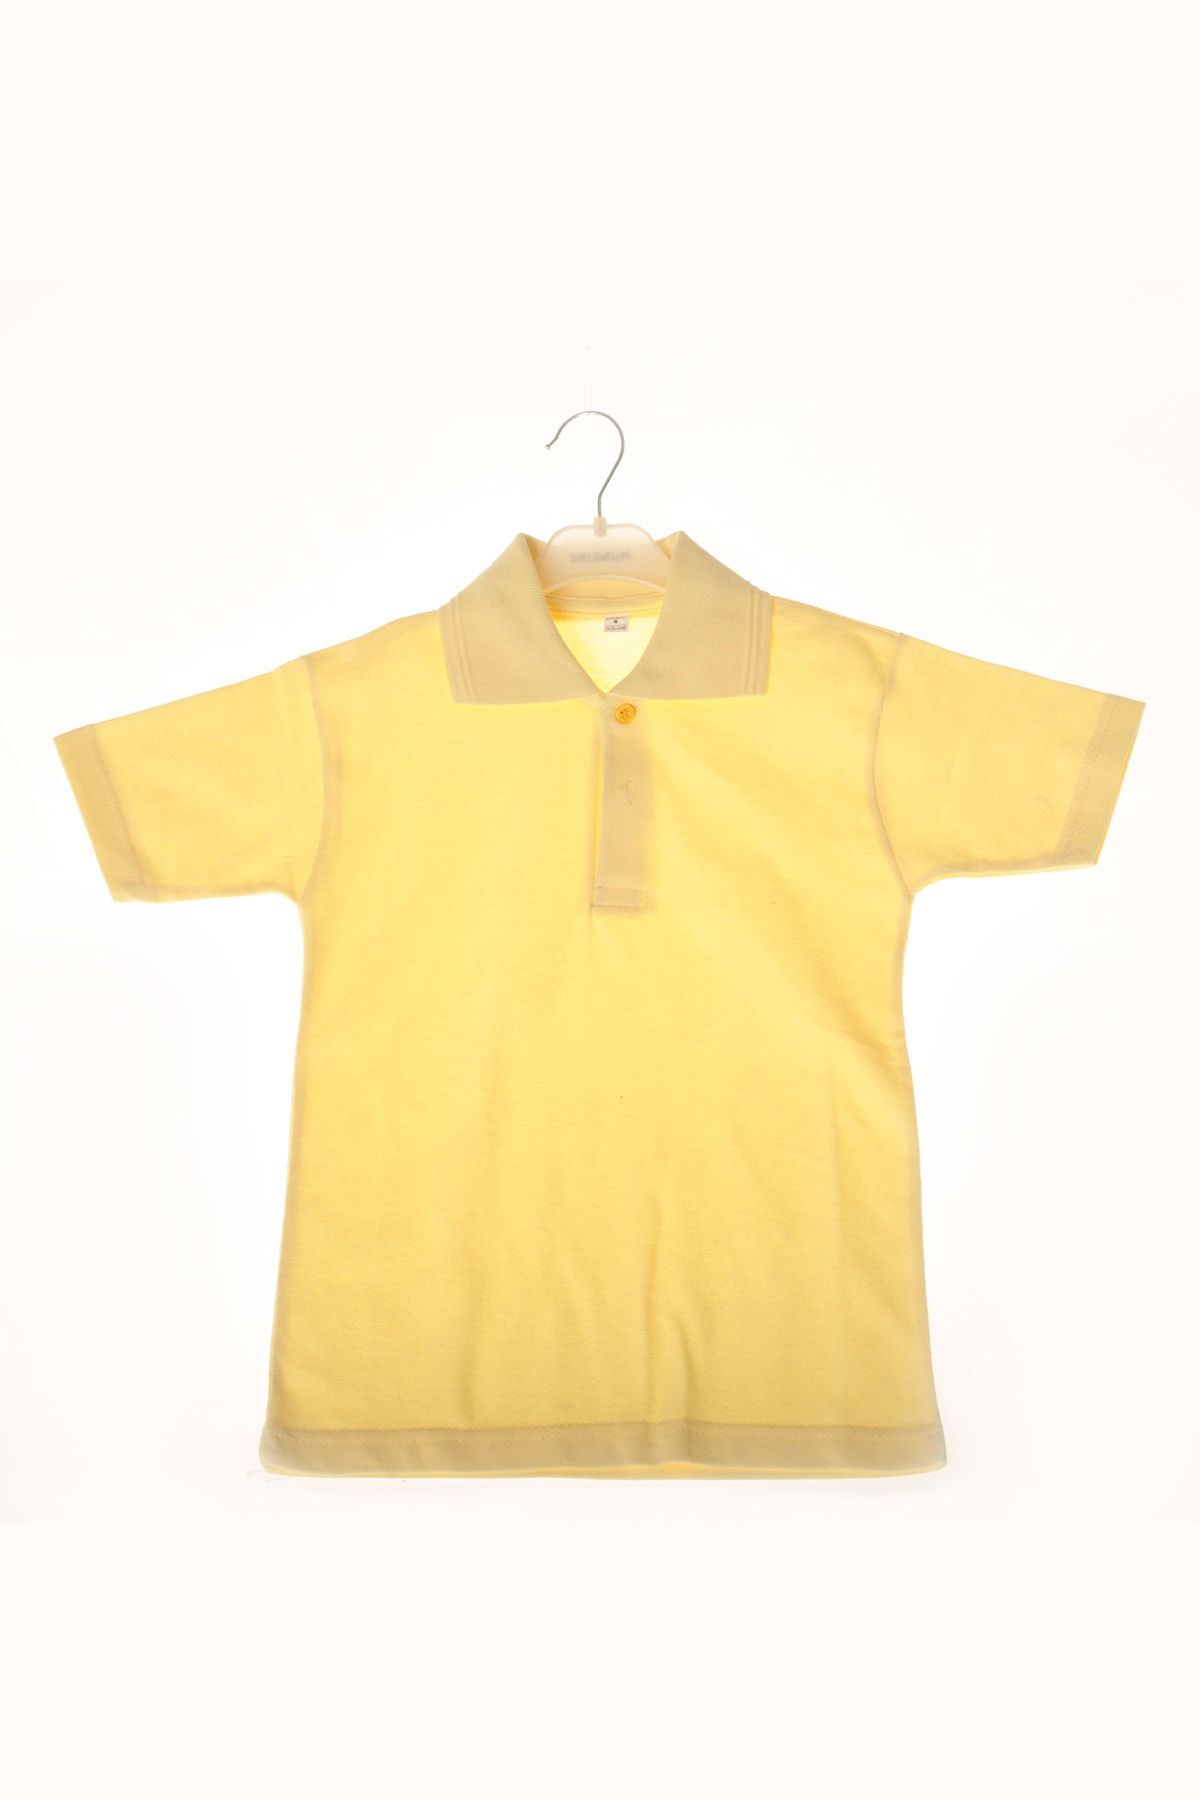 ÇÖLBAY Çocuk Açık Sarı Polo Yaka Kısa Kol Düz Renk T-shirt